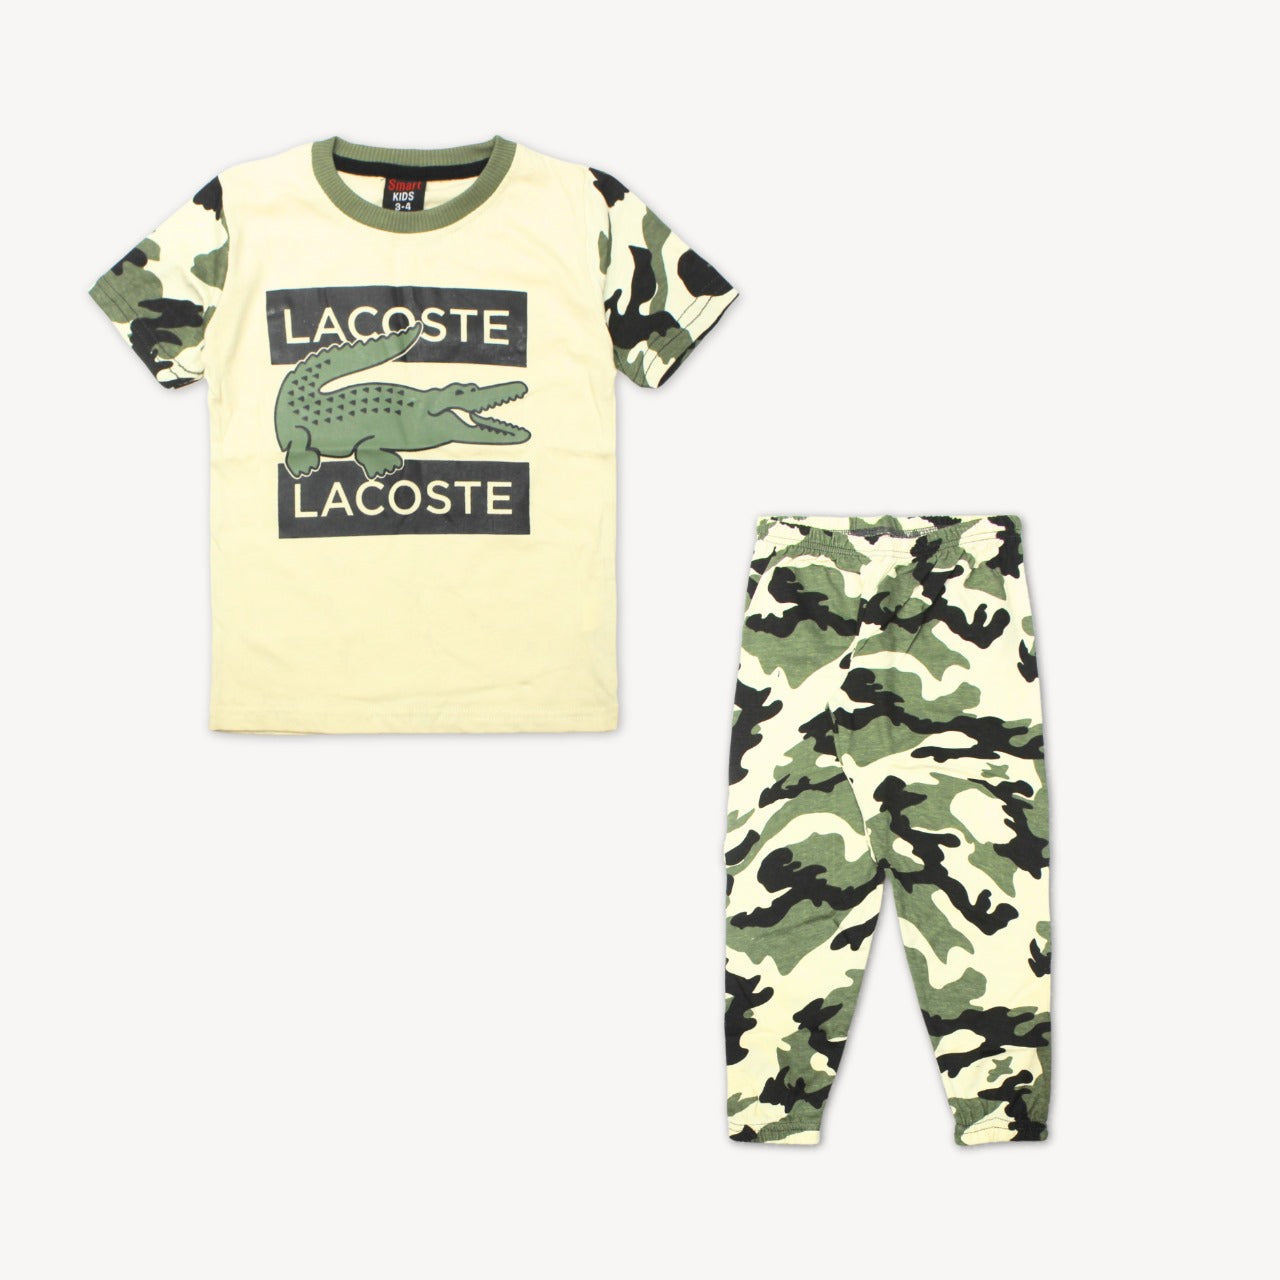 Camo L.A.C.O.S.T.E. Summer Pajama Shirt Set